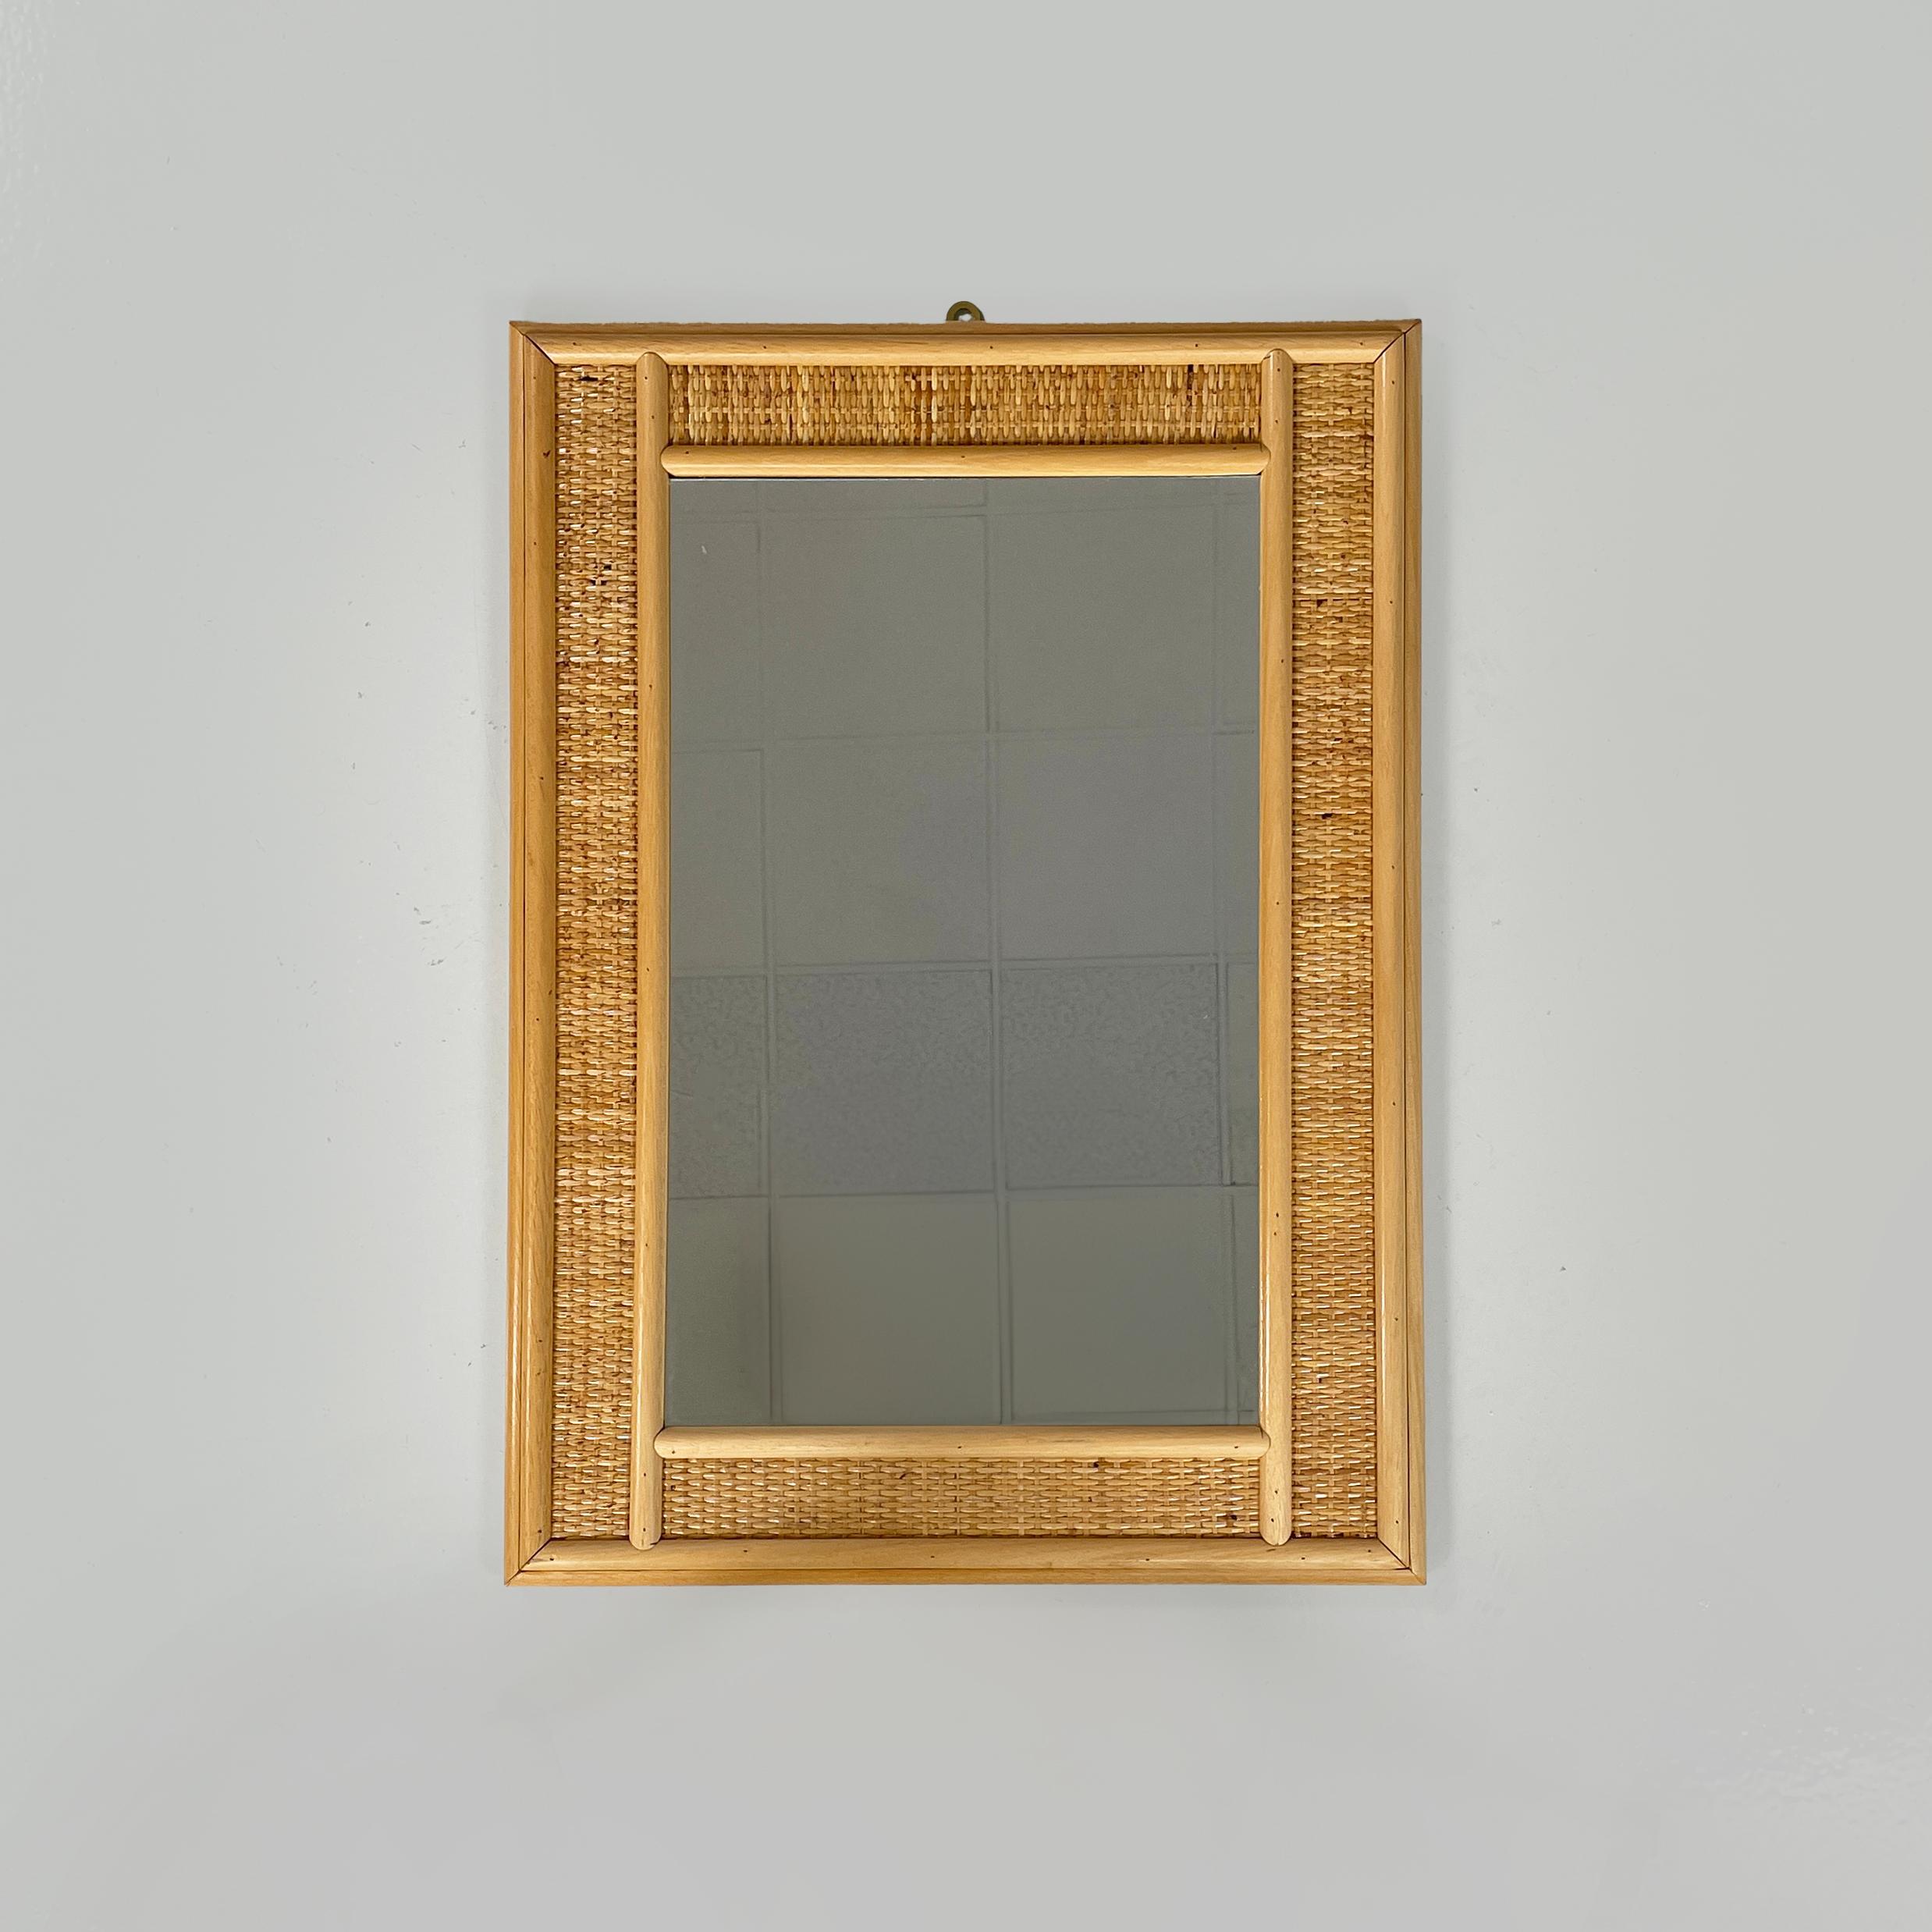 Miroir mural rectangulaire italien moderne du milieu du siècle dernier en bois et rotin, années 1960
Miroir mural rectangulaire en bois et rotin. Le cadre est composé de deux bandes de bois de chaque côté et d'une bande de rotin tressé au